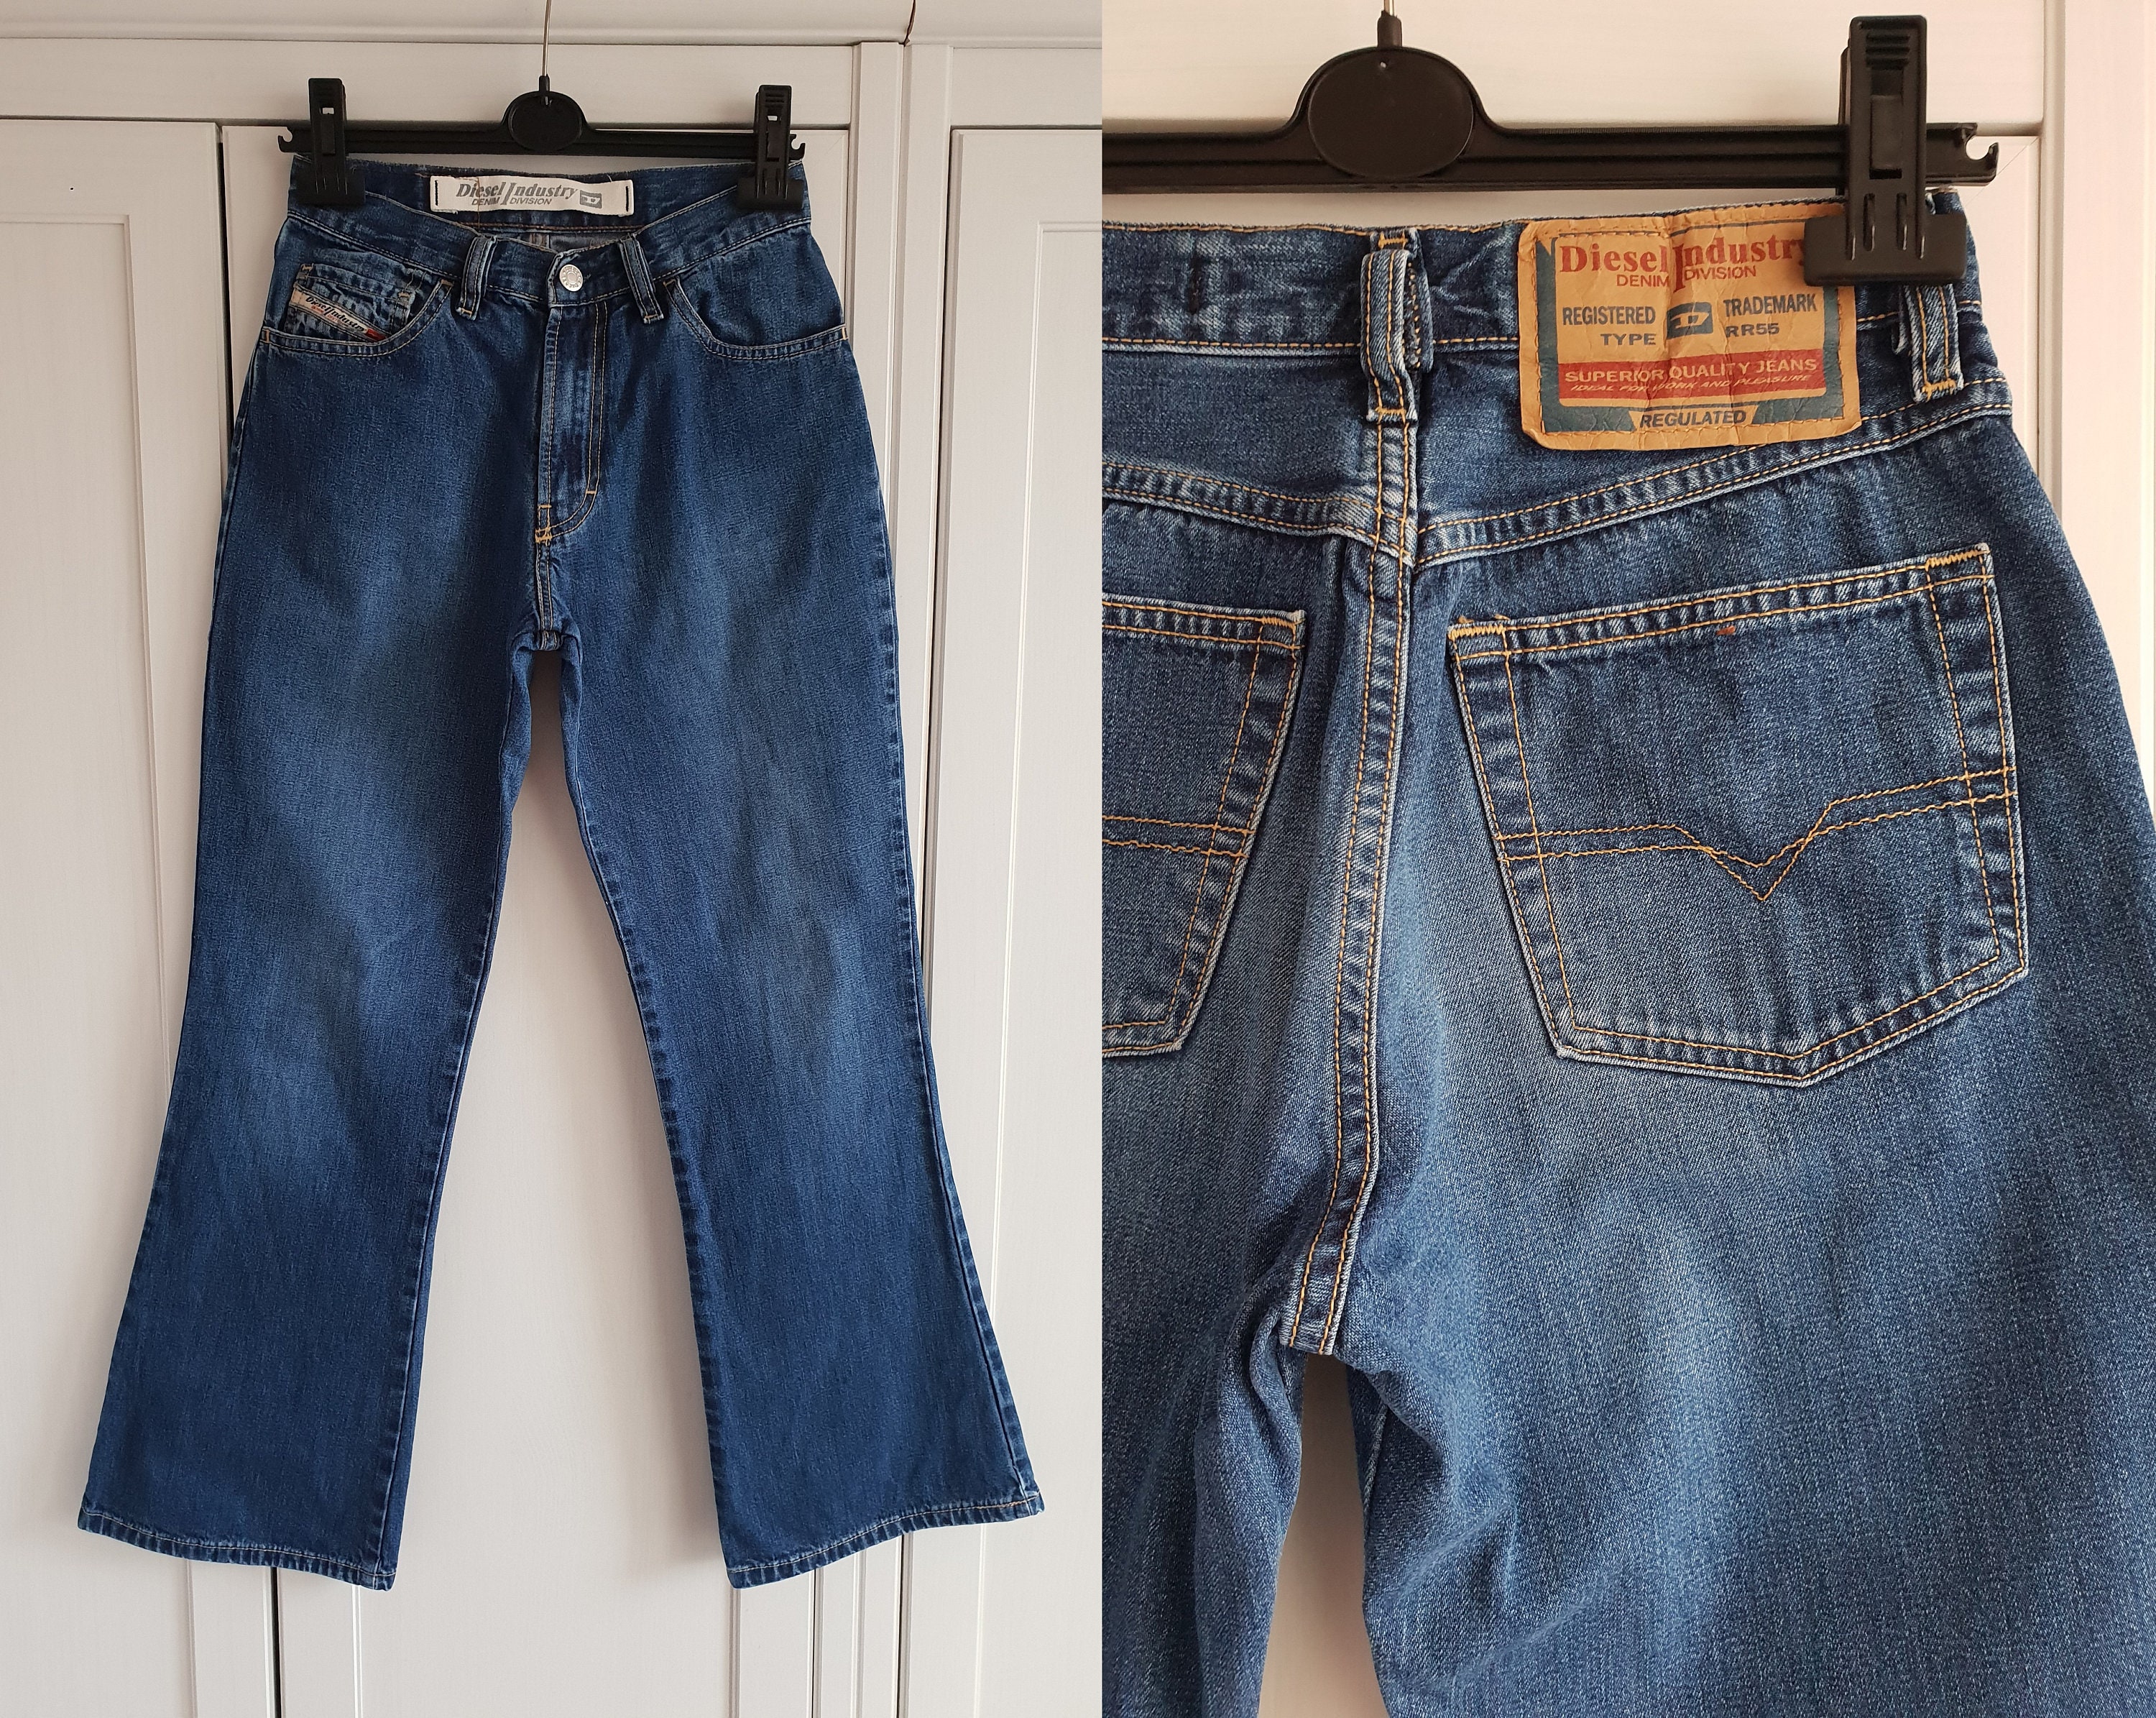 New Diesel Jeans Limited Stock! - Fredricks Menswear | Facebook